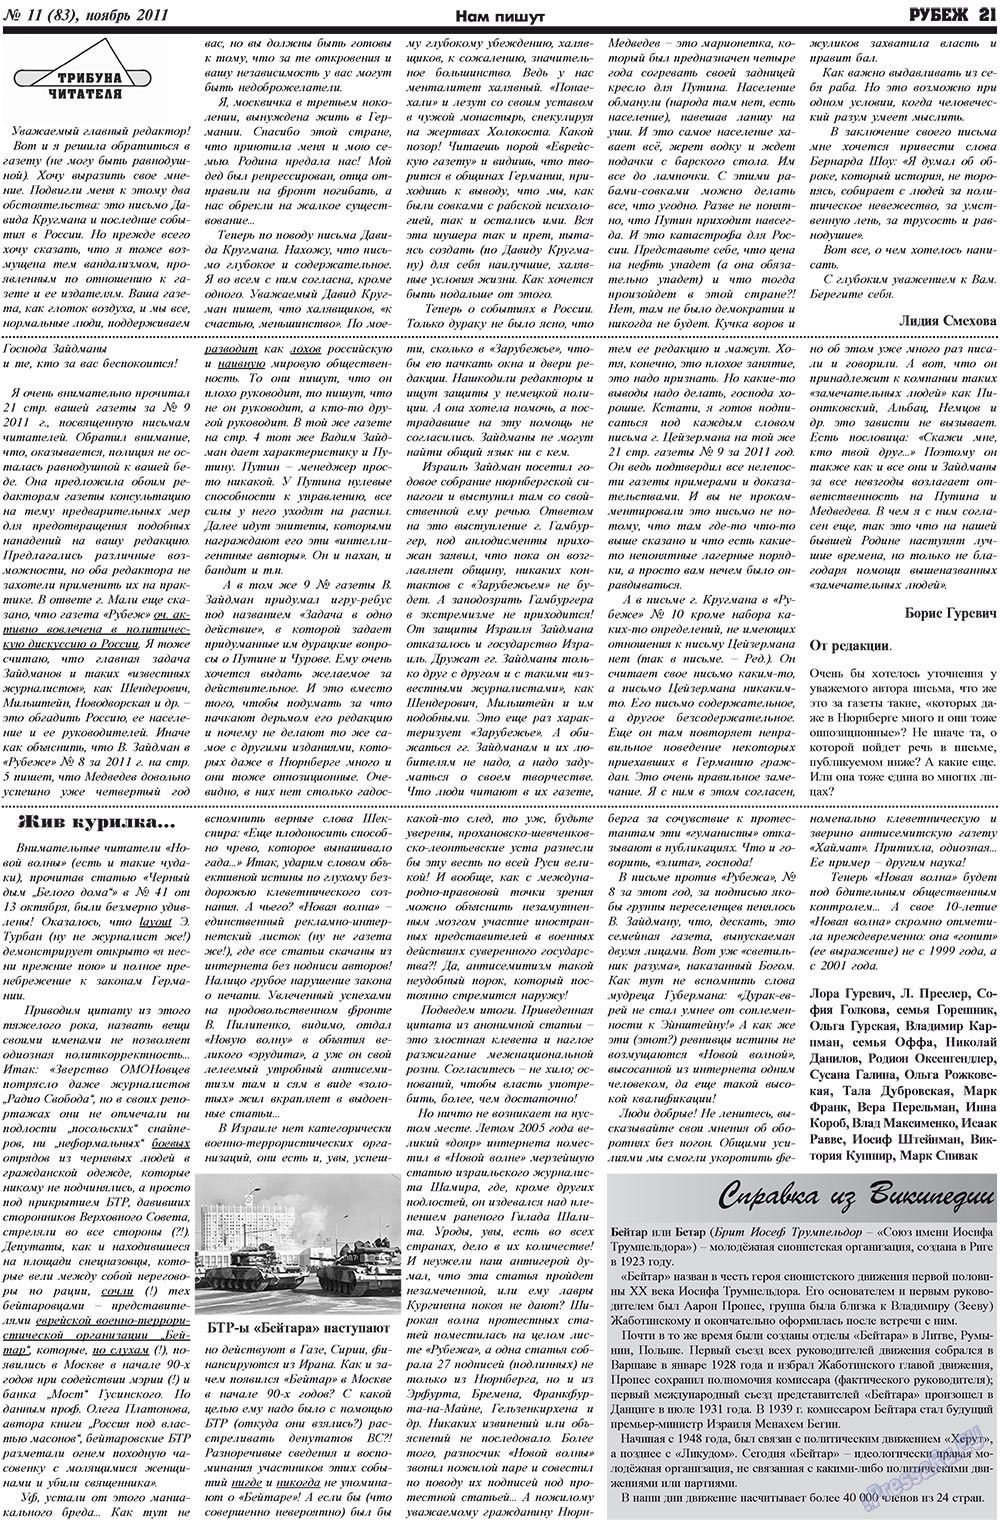 Рубеж (газета). 2011 год, номер 11, стр. 21